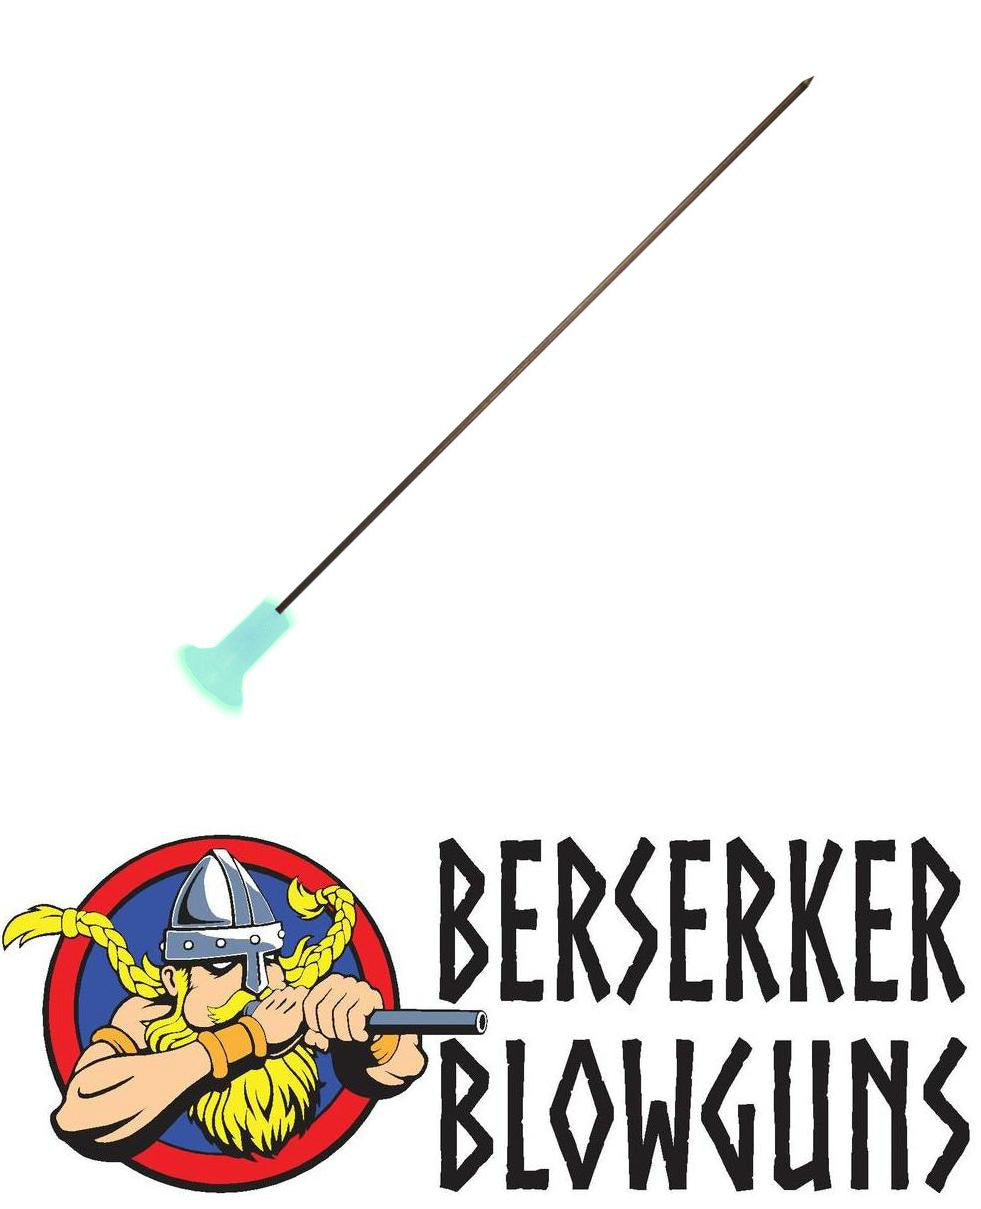 Berserker - .40 cal 3" SPEEDER Target Darts  with GLOW IN THE DARK Cones